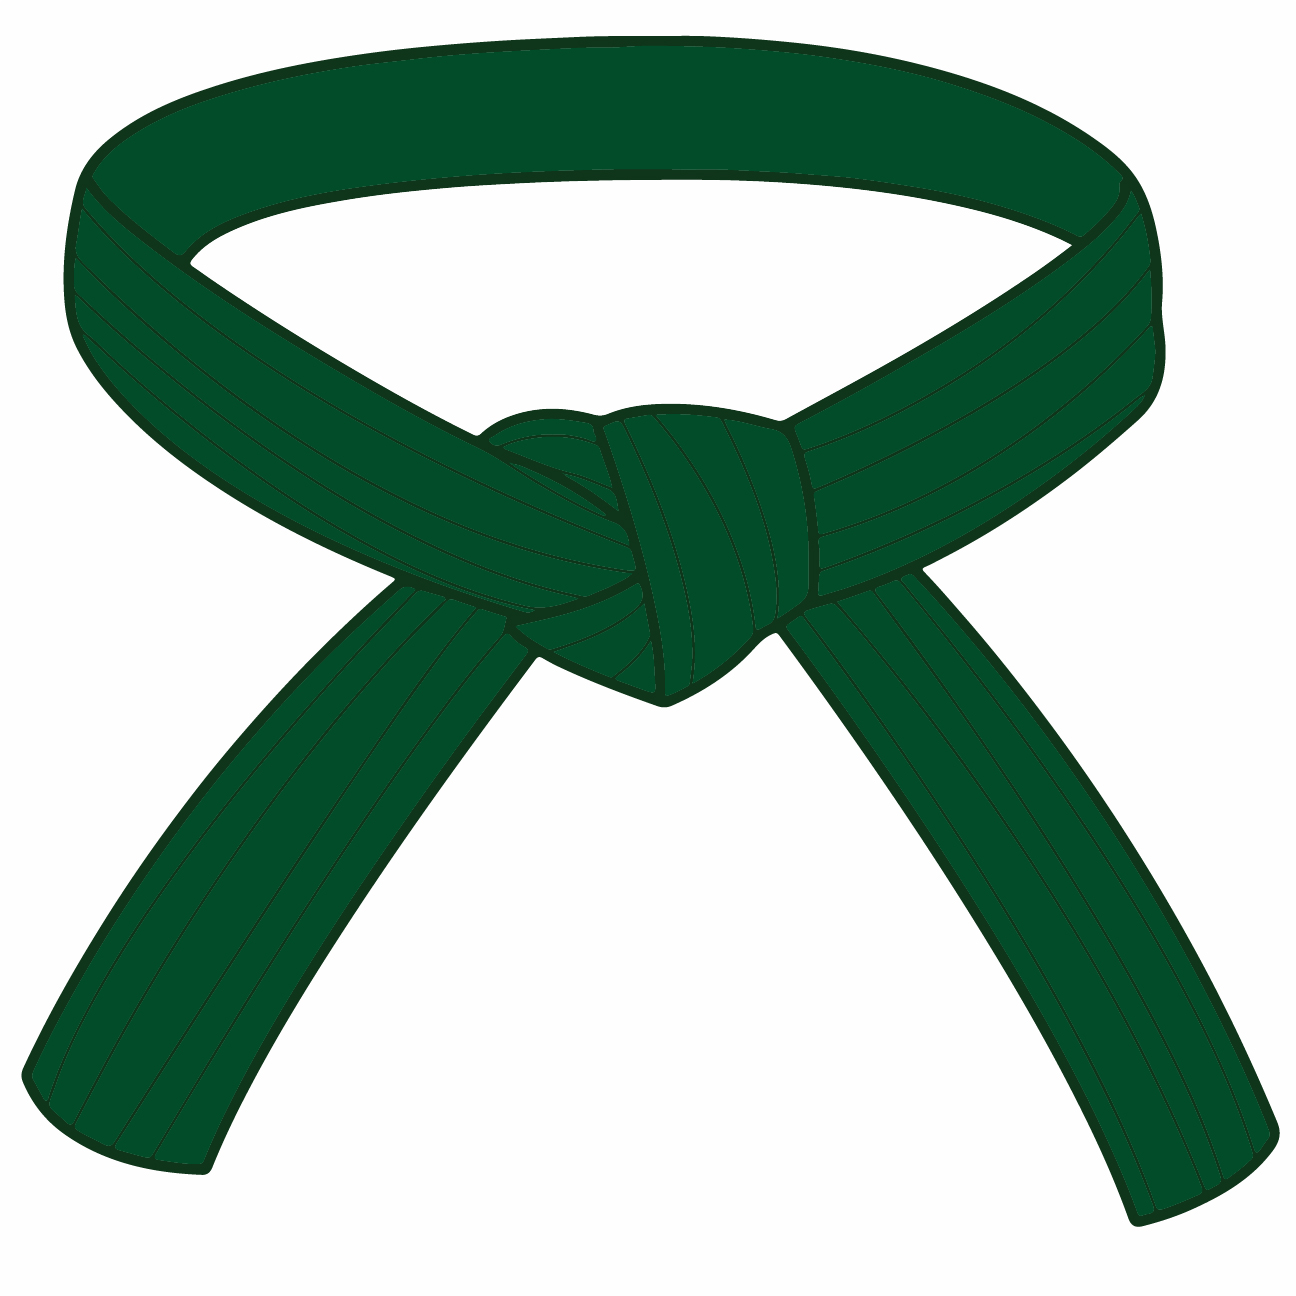 Green Belt